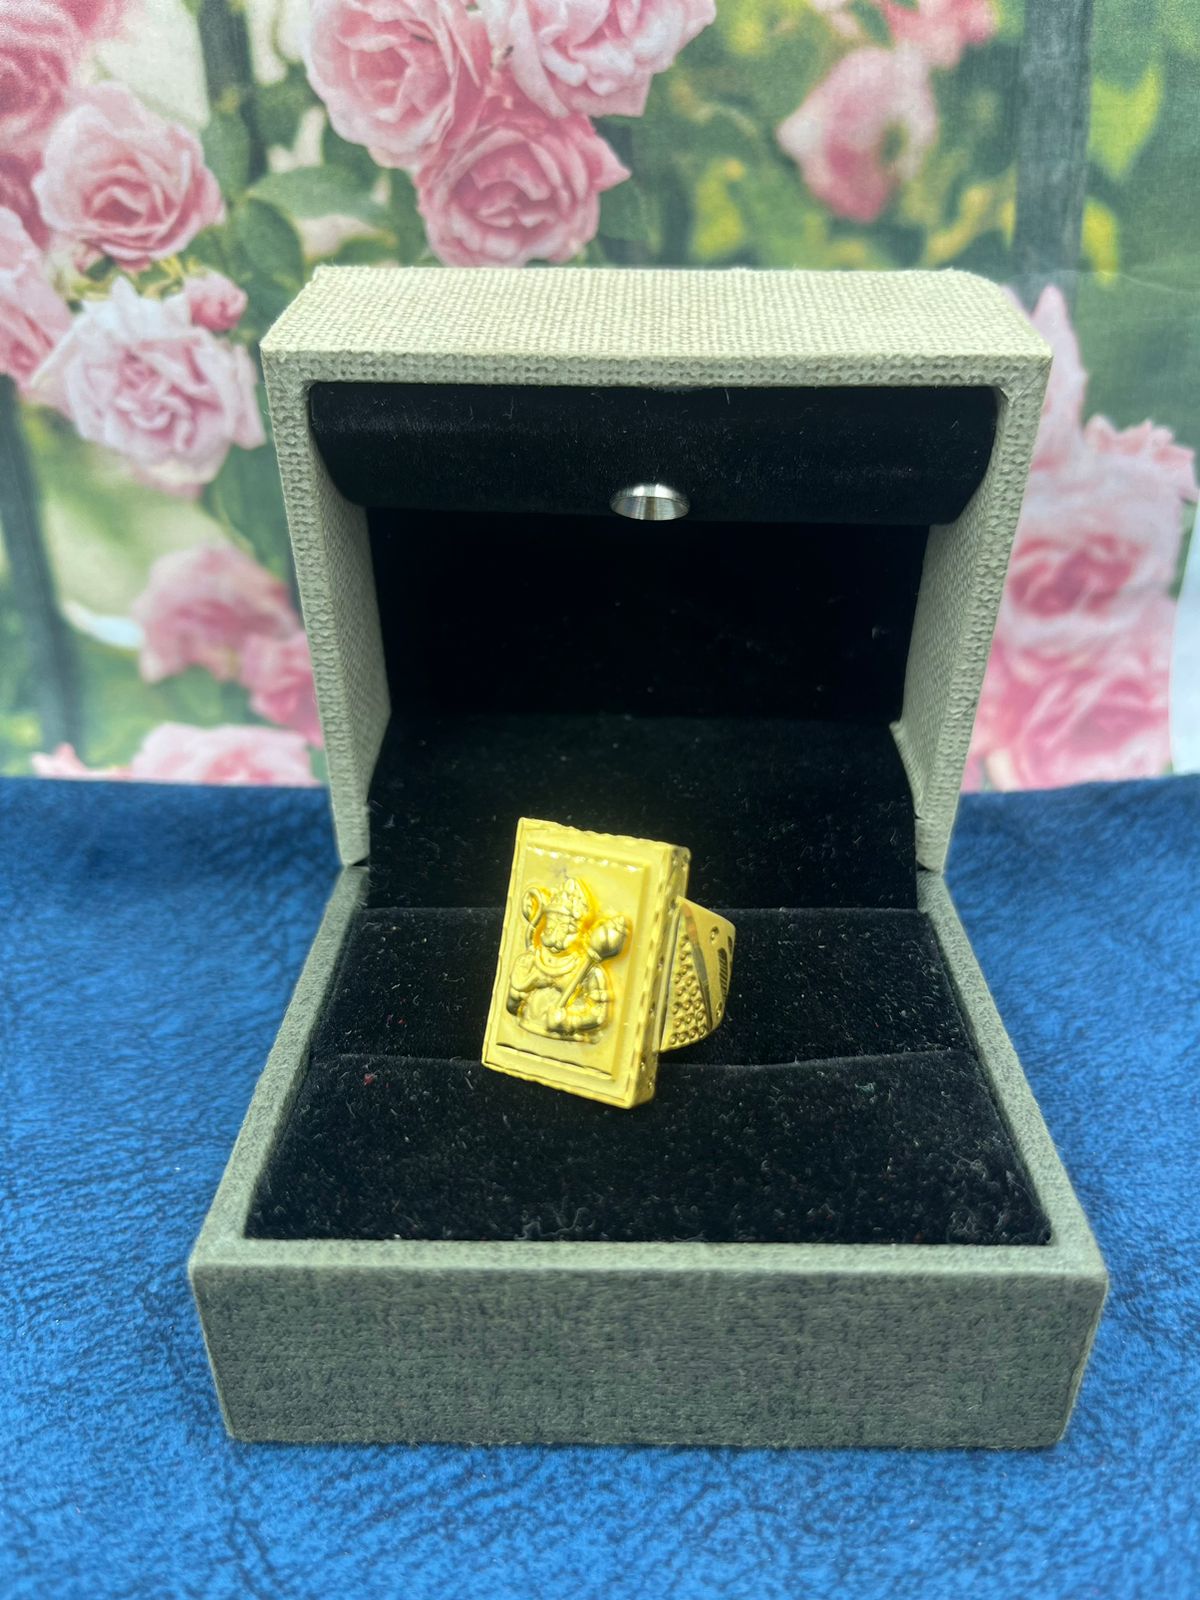 22K Gold 'Hanumanji' Ring For Men With Cz - 235-GR6035 in 8.600 Grams